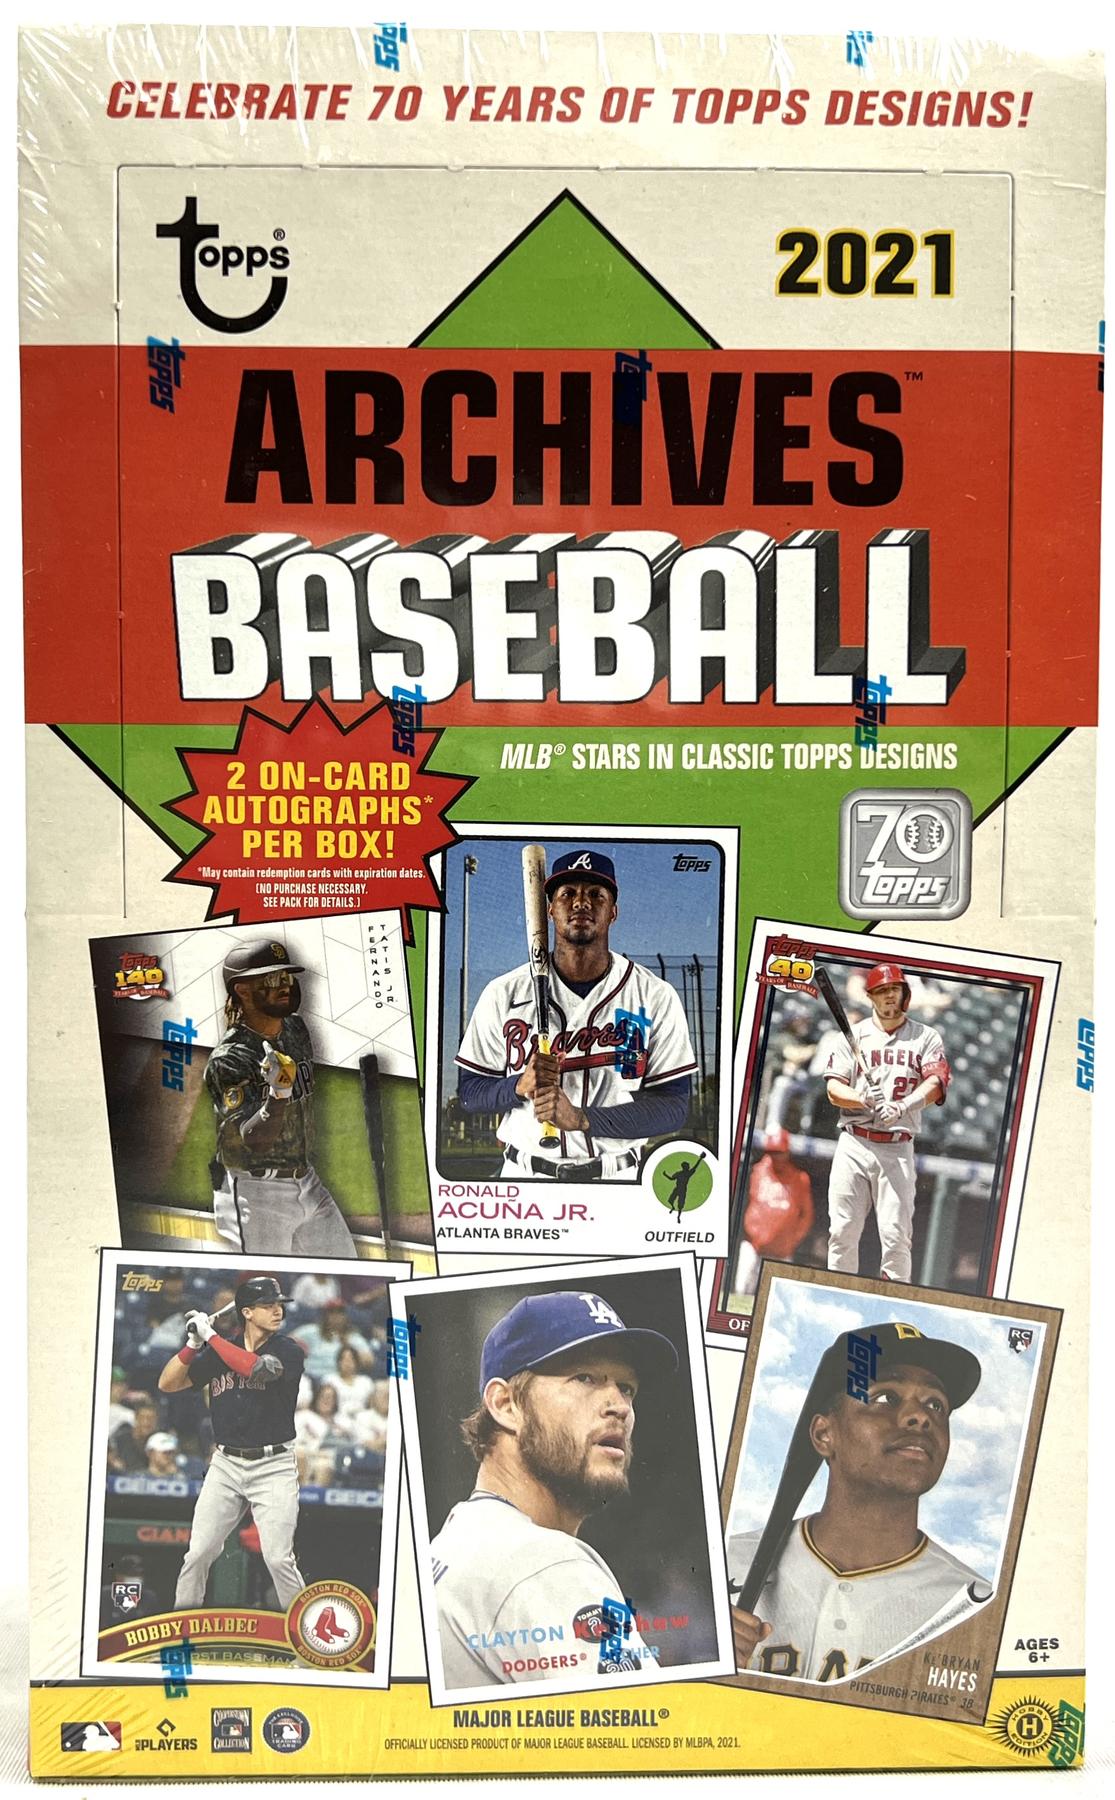 1989 Topps Baseball Card Memories and Set Breakdown